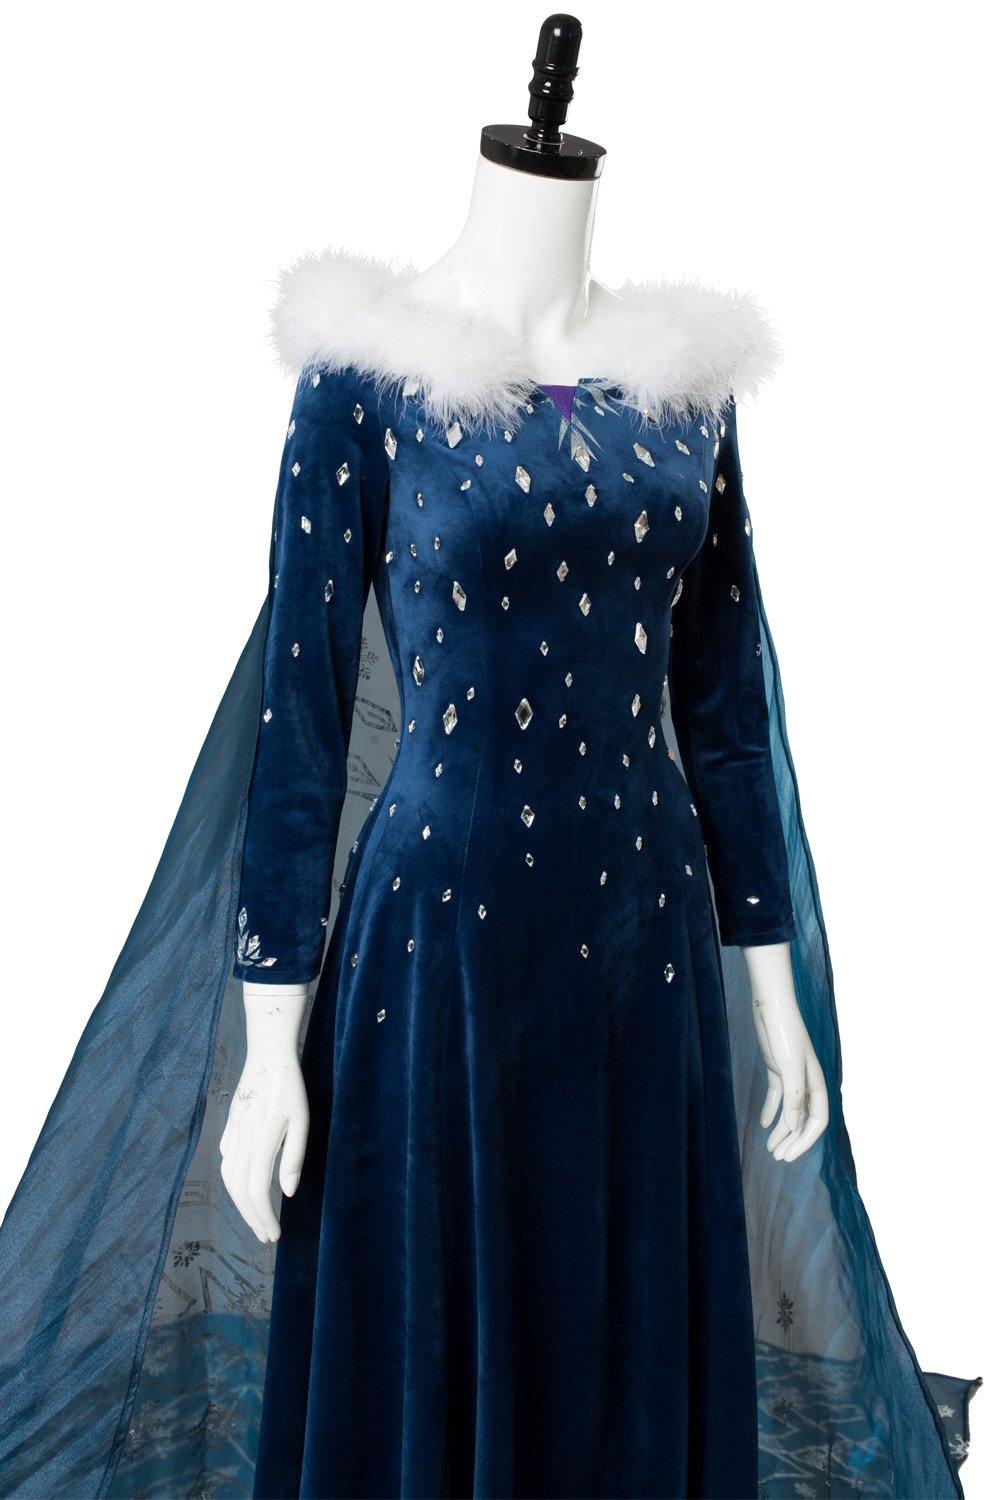 Frozen Olaf's Frozen Adventure Elsa Kleid Cosplay Kostüm - cosplaycartde